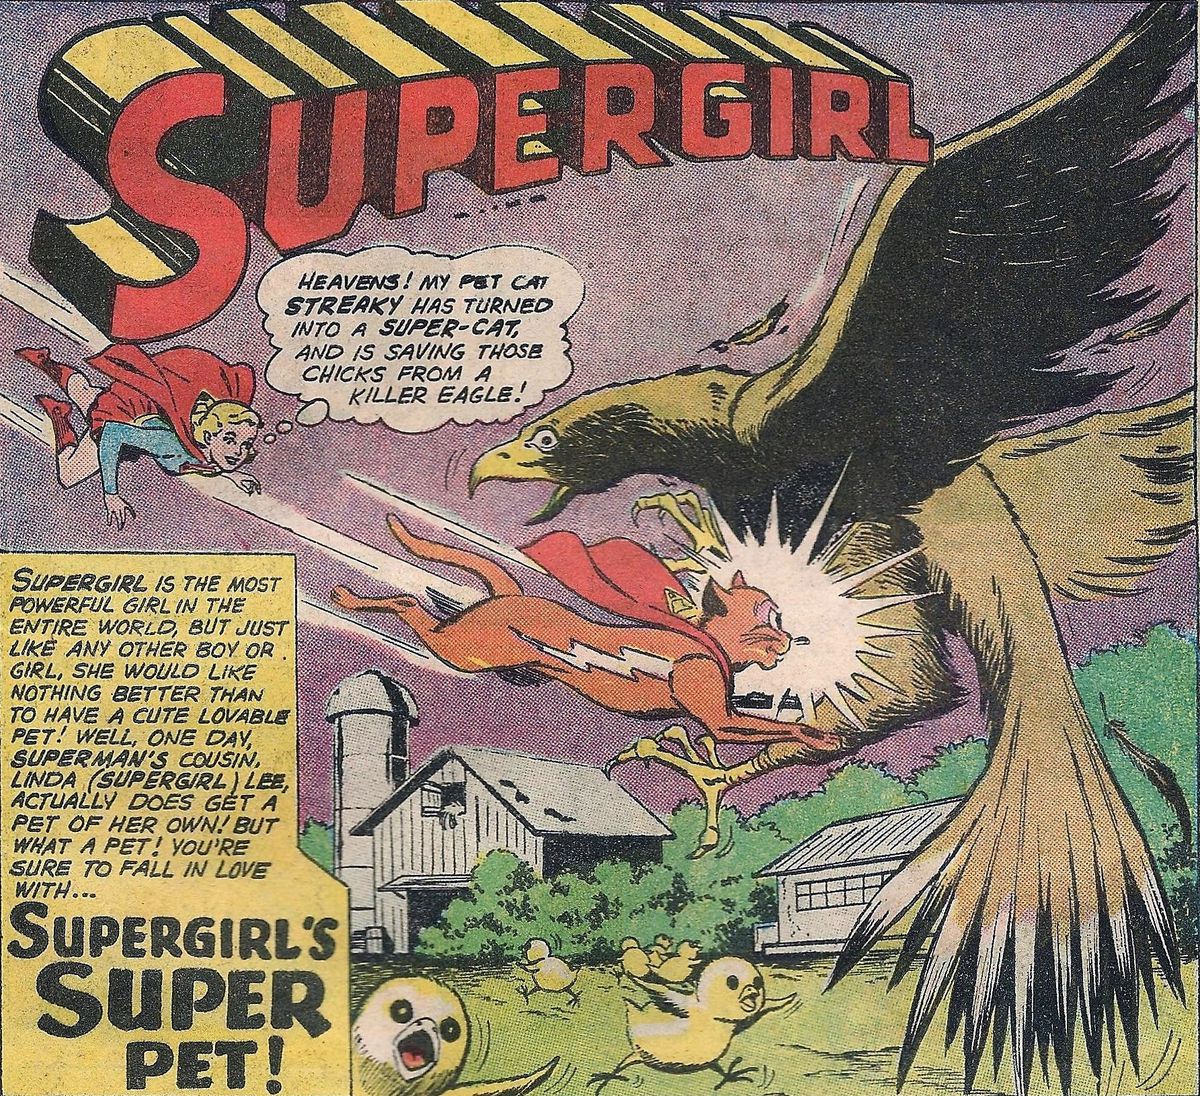 Streaky il Supercat si precipita a combattere un'aquila, che stava tentando di afferrare alcuni pulcini.  Supergirl guarda